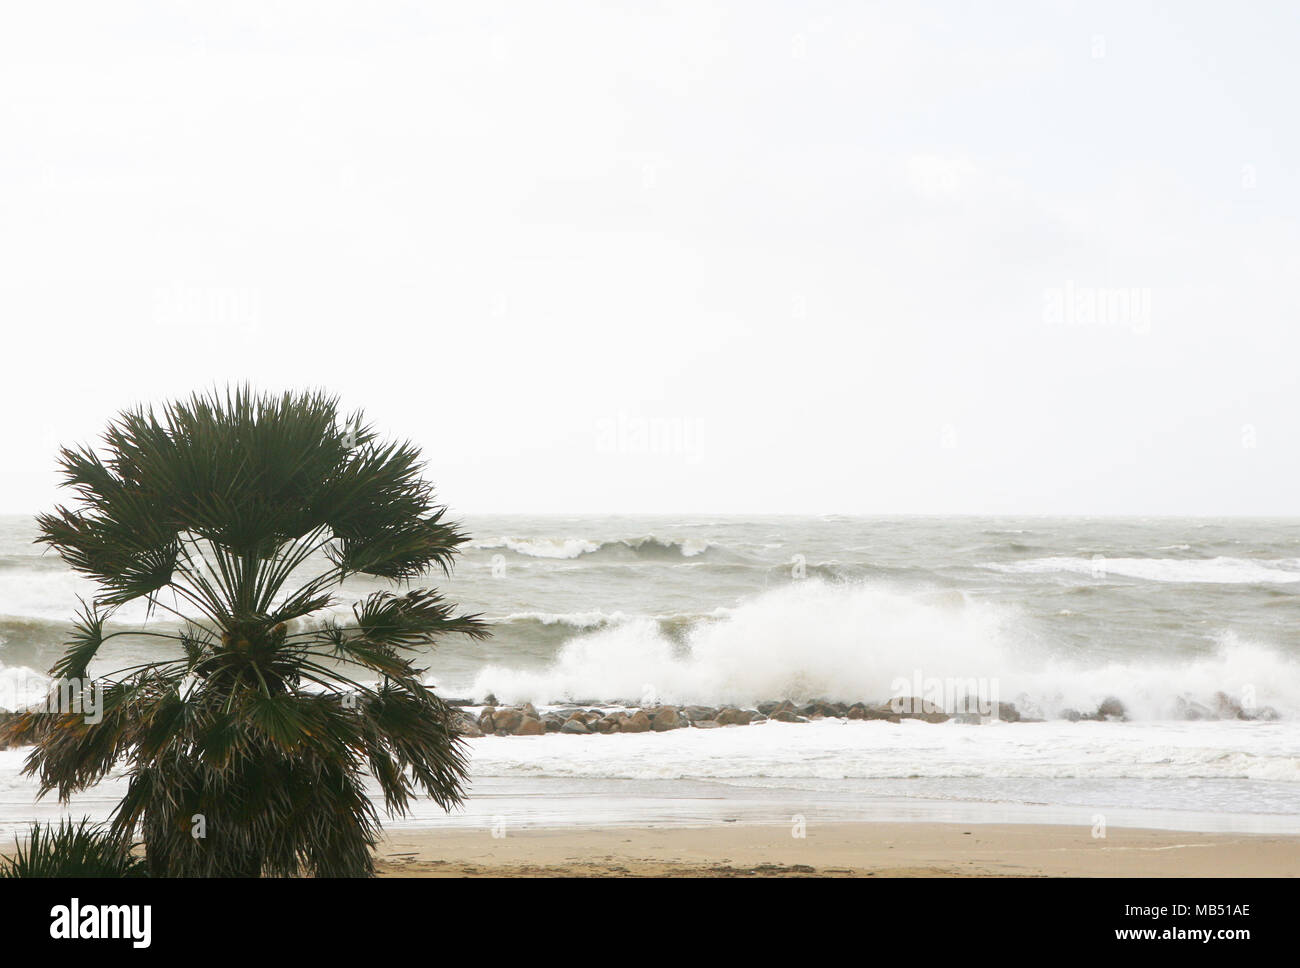 Palmier au cours d'une tempête en mer, Santa Severa, Italie Banque D'Images